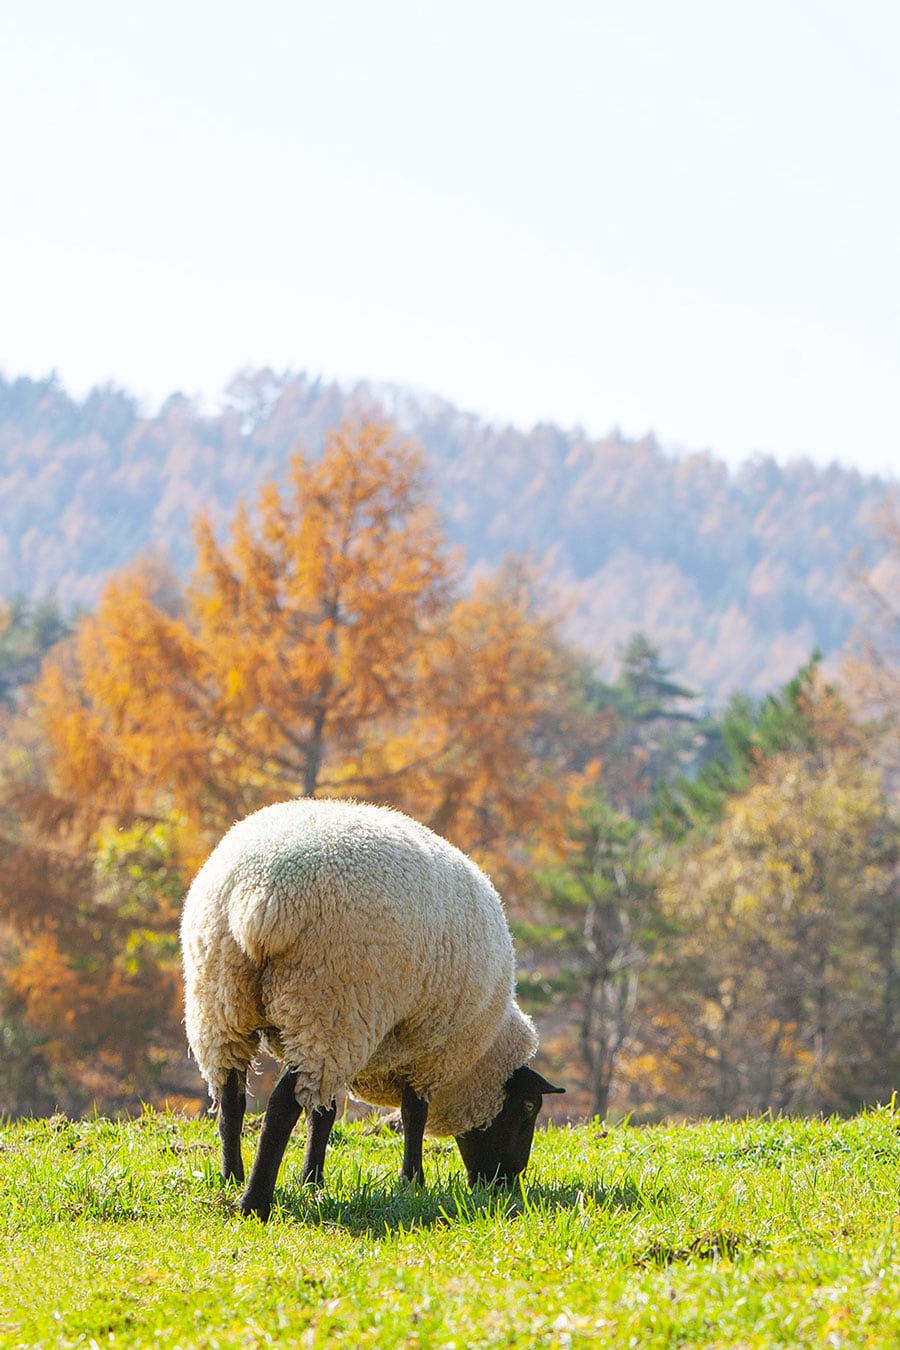 山梨県の「まきば公園」で11月に撮影。秋の風景も楽しみつつ羊を愛でて。